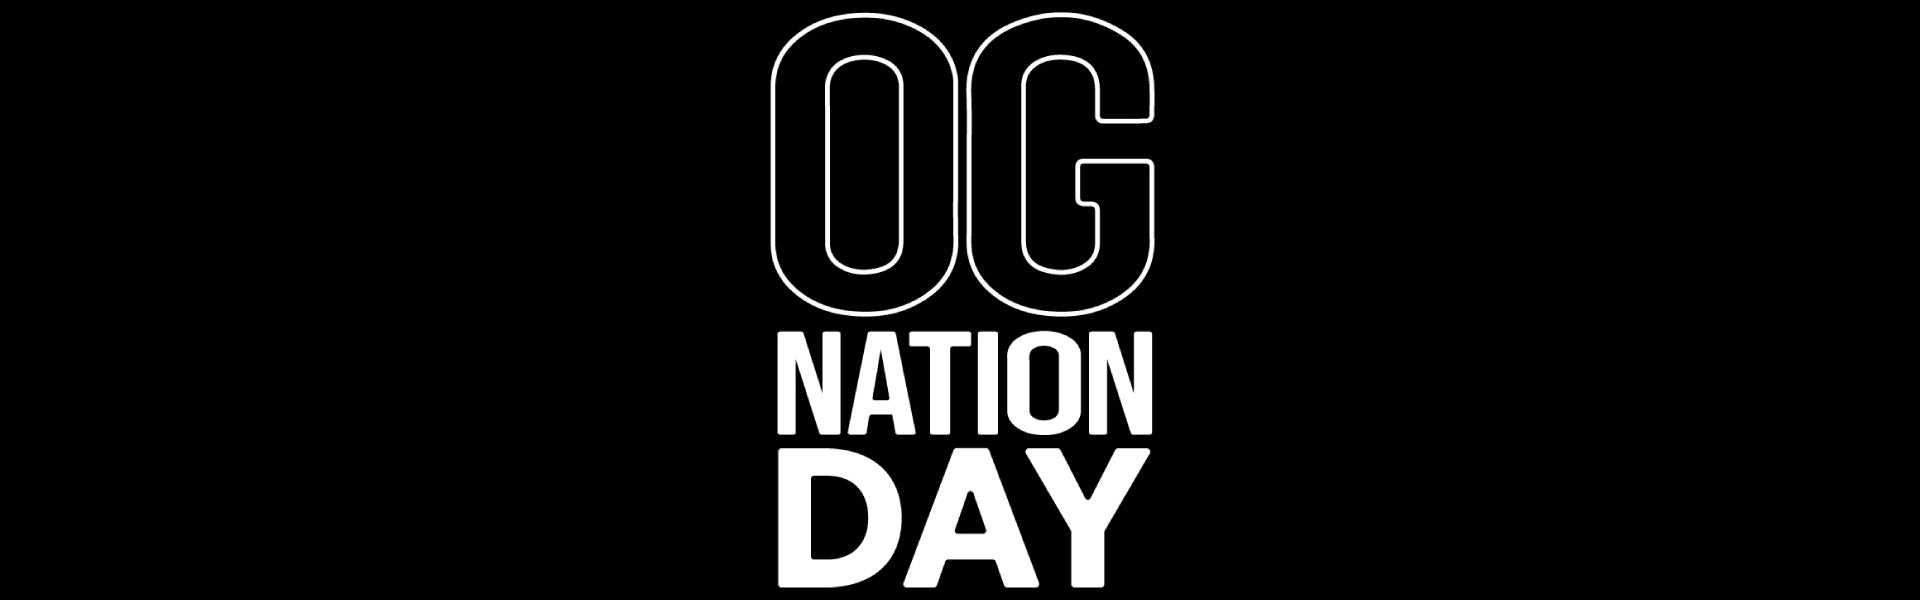 1st Annual OG DAY Event at OG NATION in Maywood.